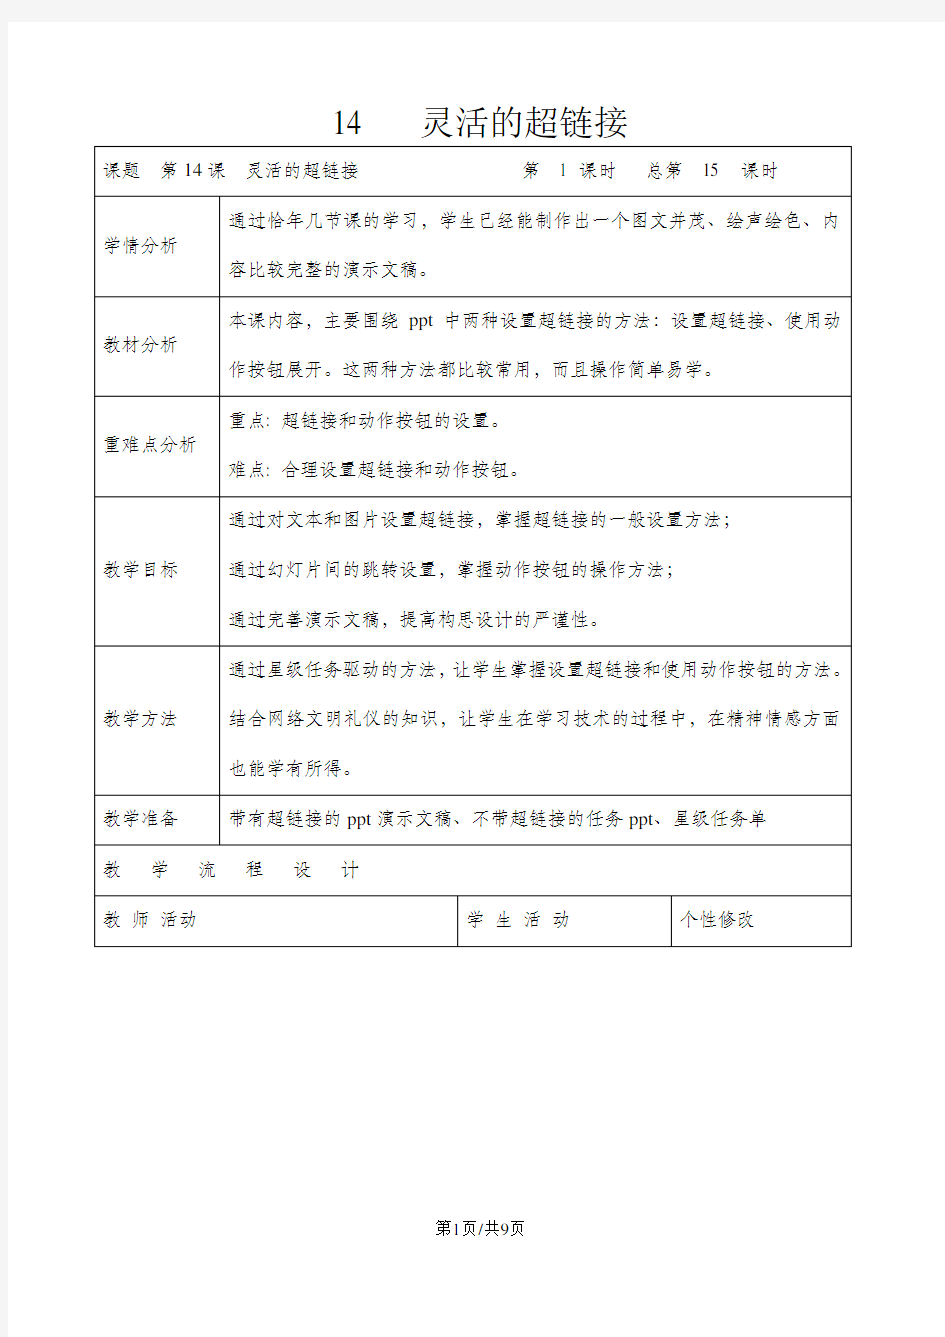 五年级下册信息技术教案4.14灵活的超链接 ｜浙江摄影版( 新 )